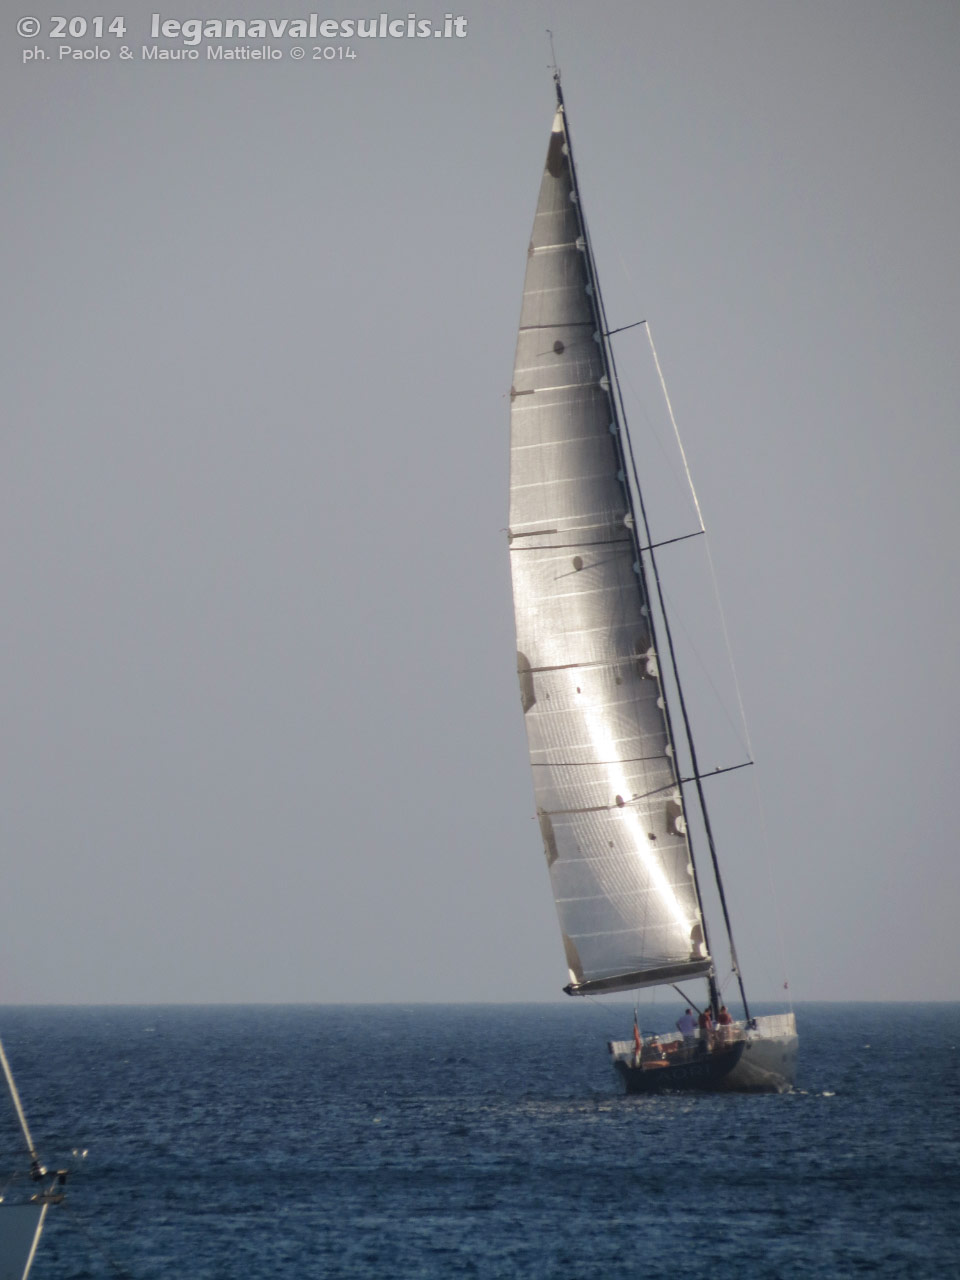 Porto Pino - Barche - Agosto 2014,Porto Pino, barca a vela (24m) Aori, dei cantieri Wally